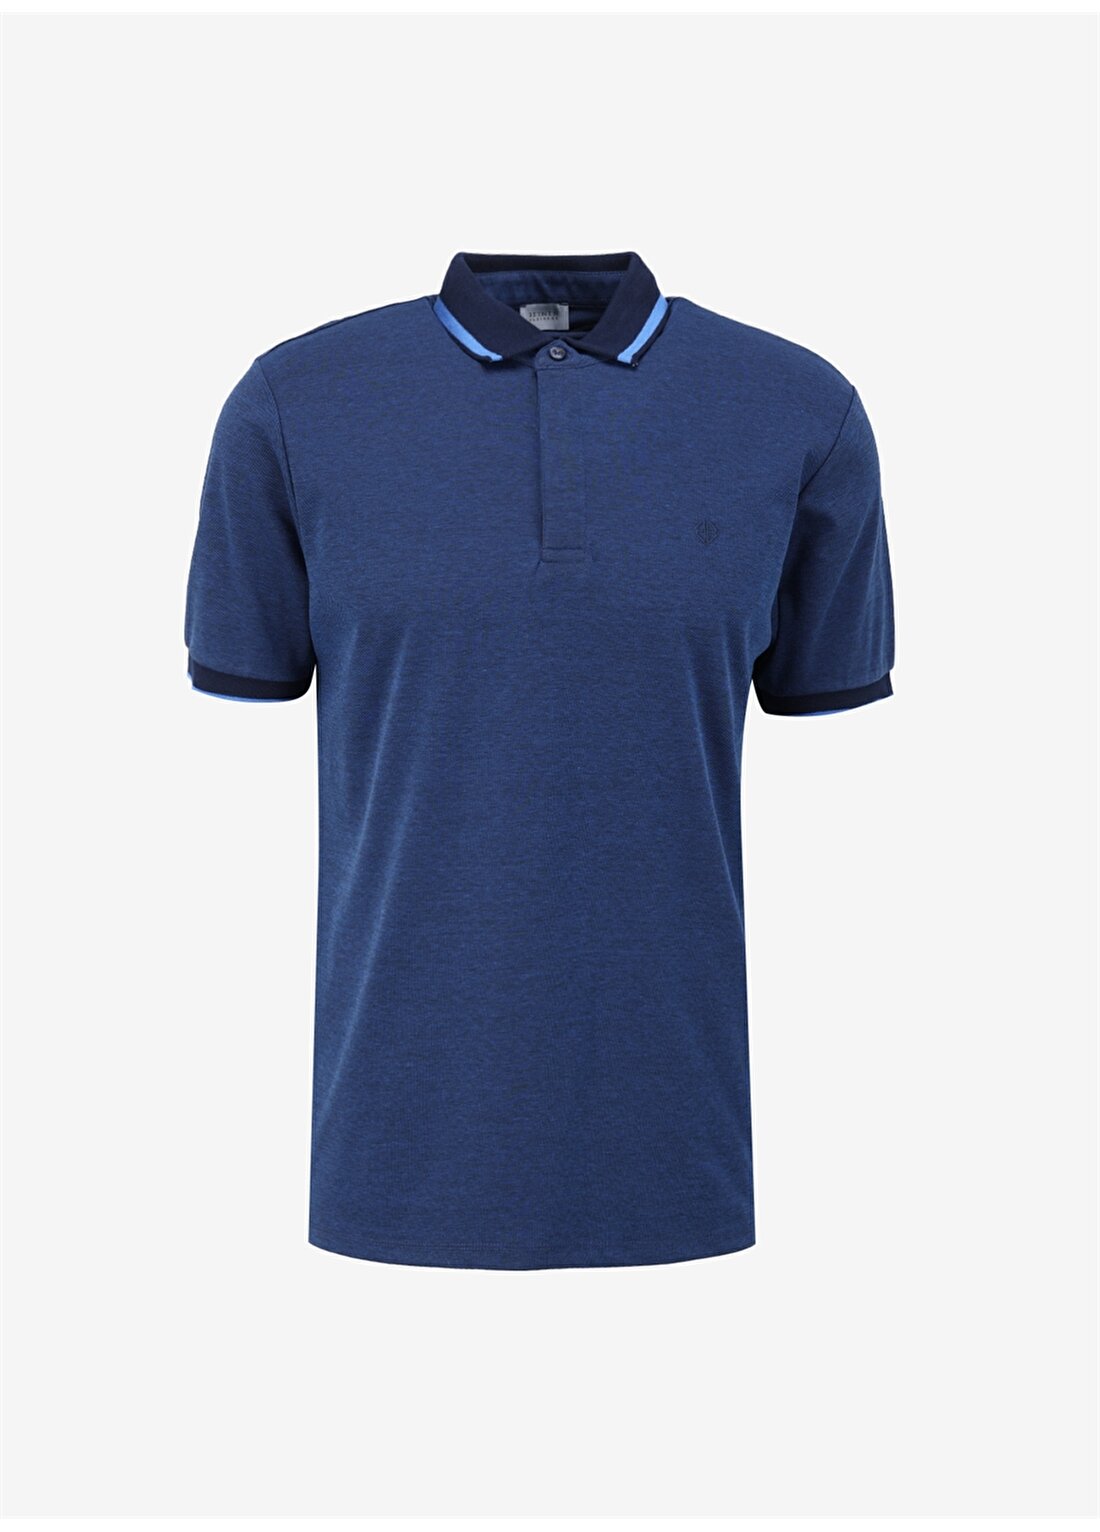 Beymen Business Lacivert Erkek Polo T-Shirt 4BX482420006